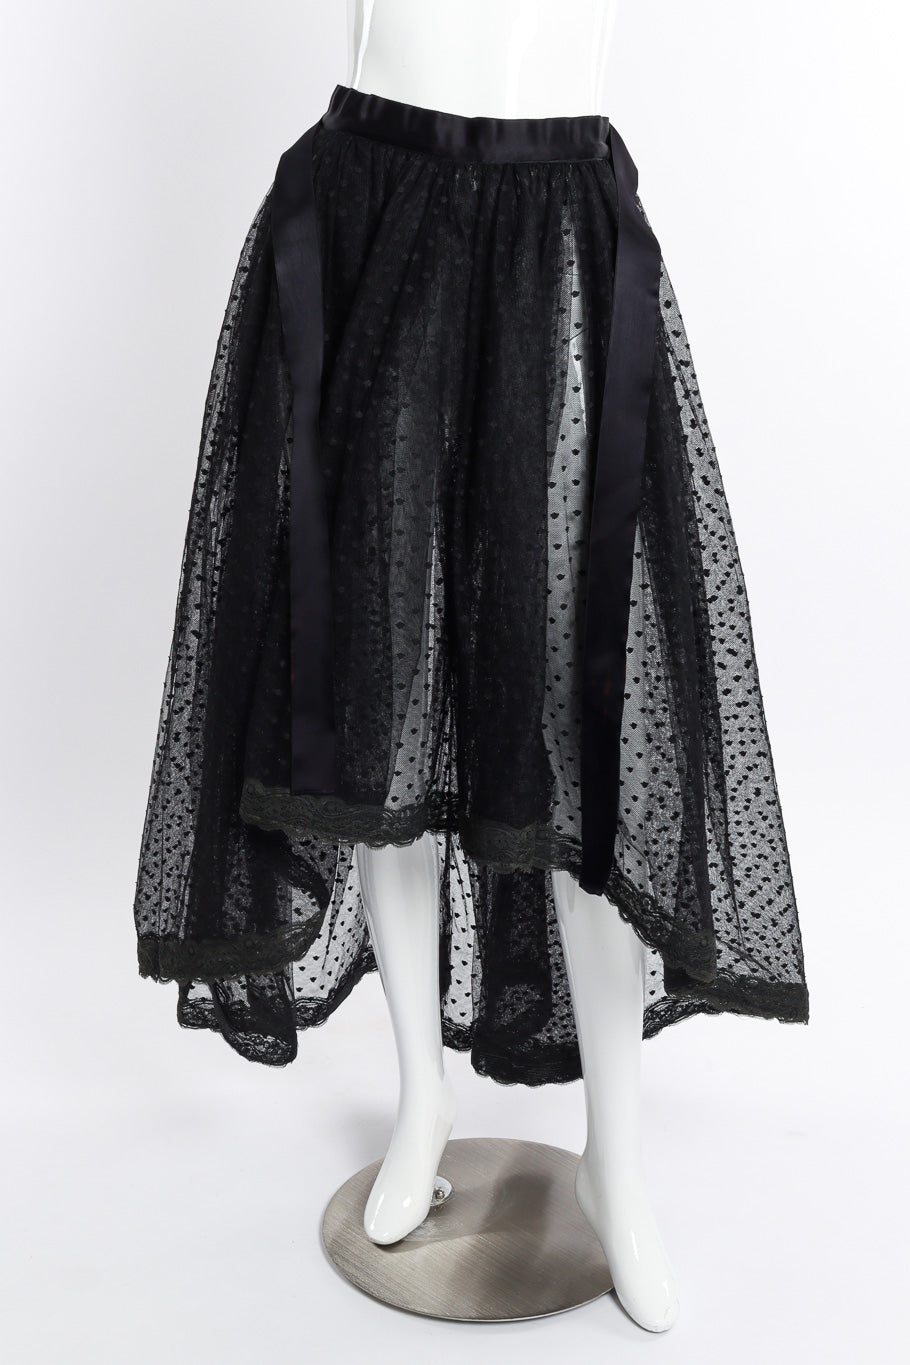 Vintage Bill Blass Polka Dot Tulle Skirt front on mannequin @recessla